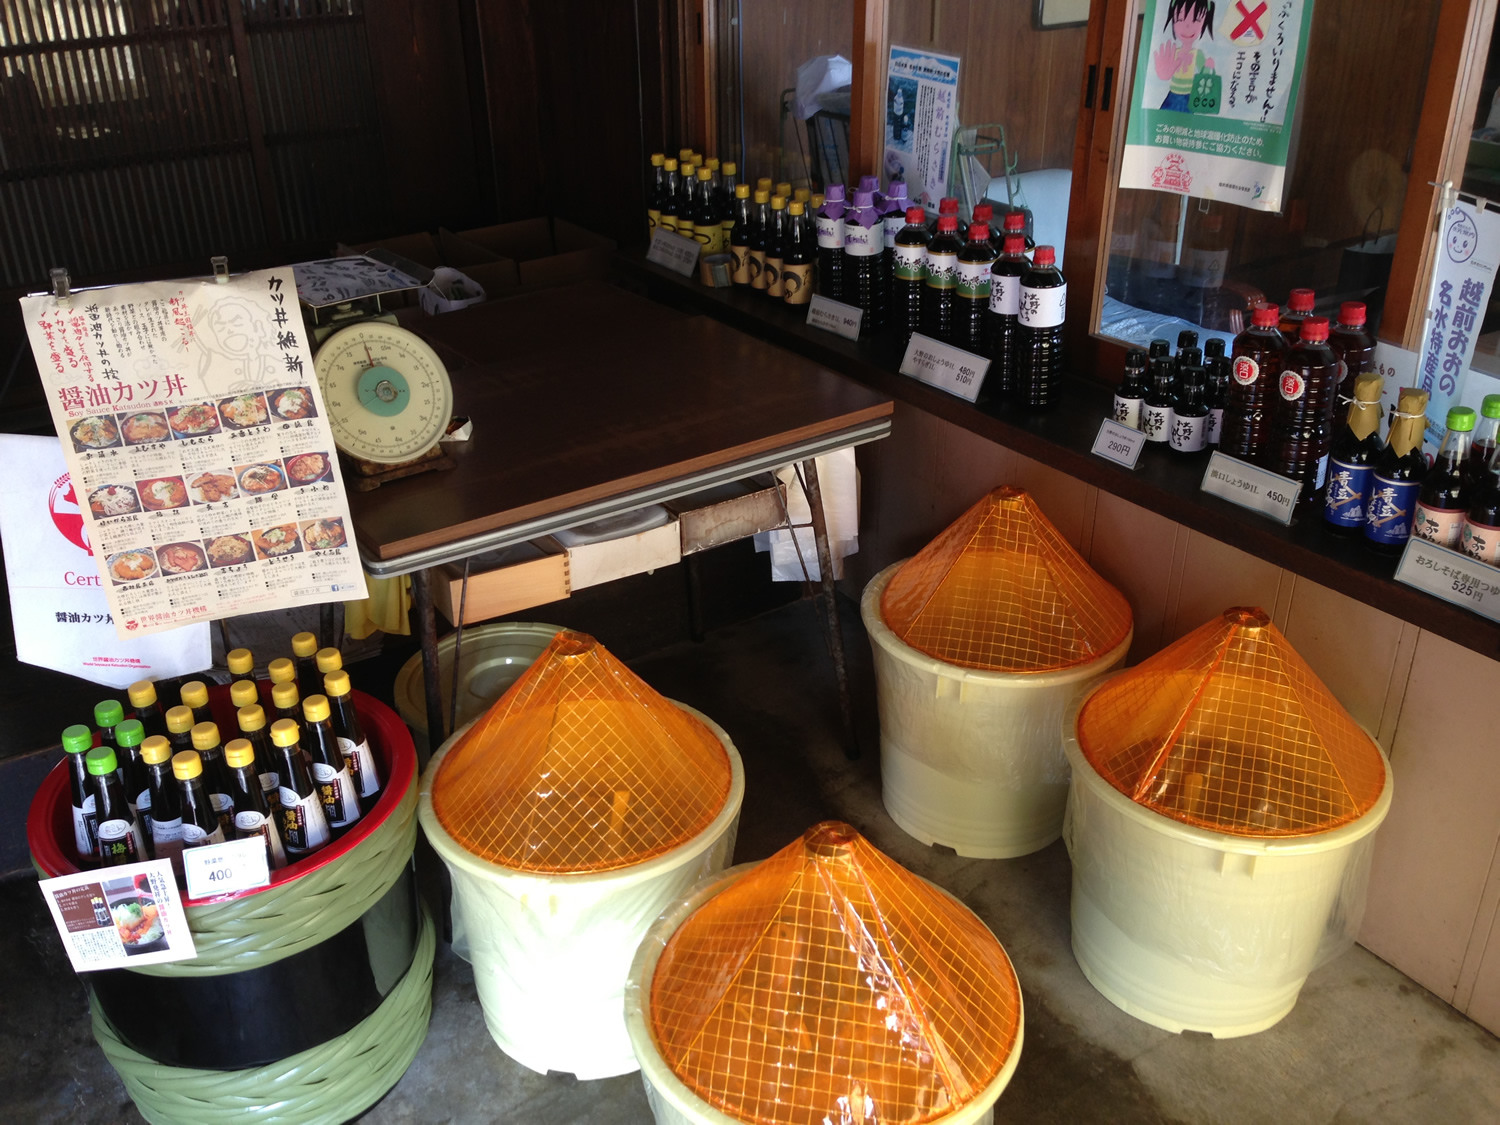 福井有数のそば産地である越前大野で100年以上、麹づくりから一貫して醤油醸造を続ける野村醤油様を見学しました。